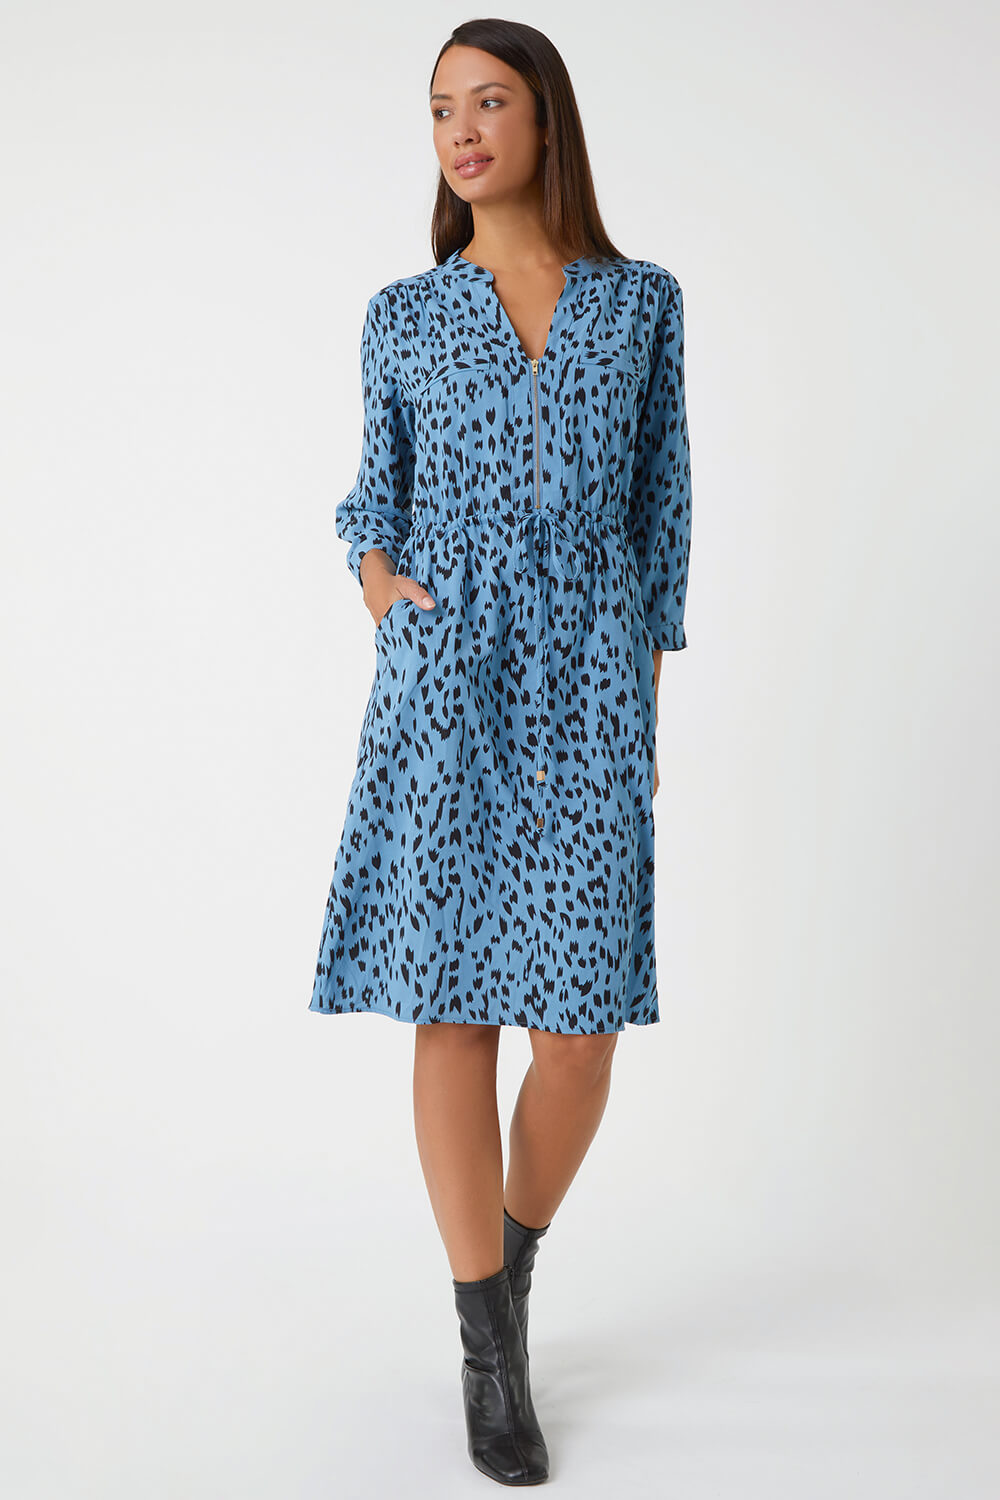 Blue Animal Print Zip Detail Shirt Dress, Image 2 of 5